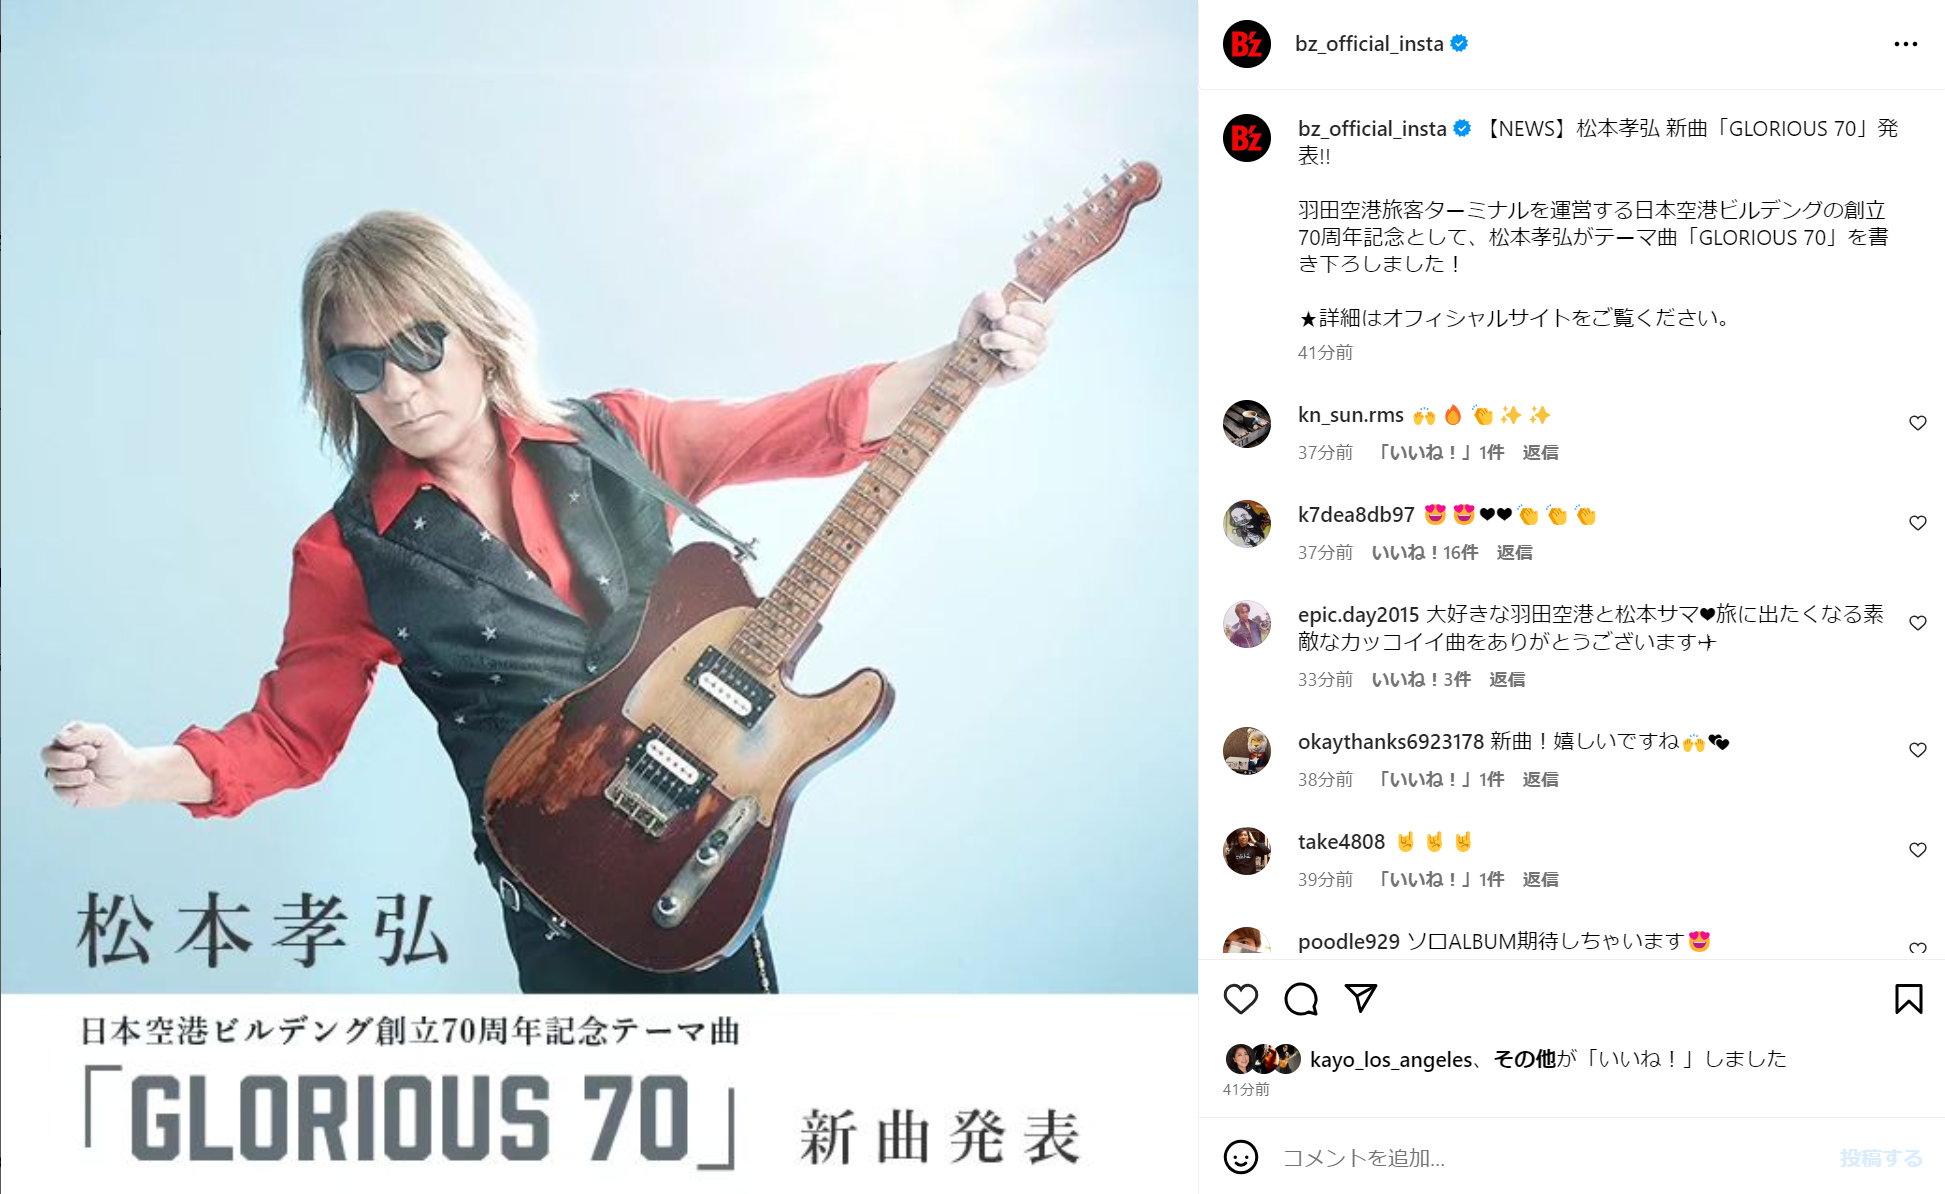 松本孝弘「GLORIOUS 70」の告知を行うB'z公式Instagramの投稿